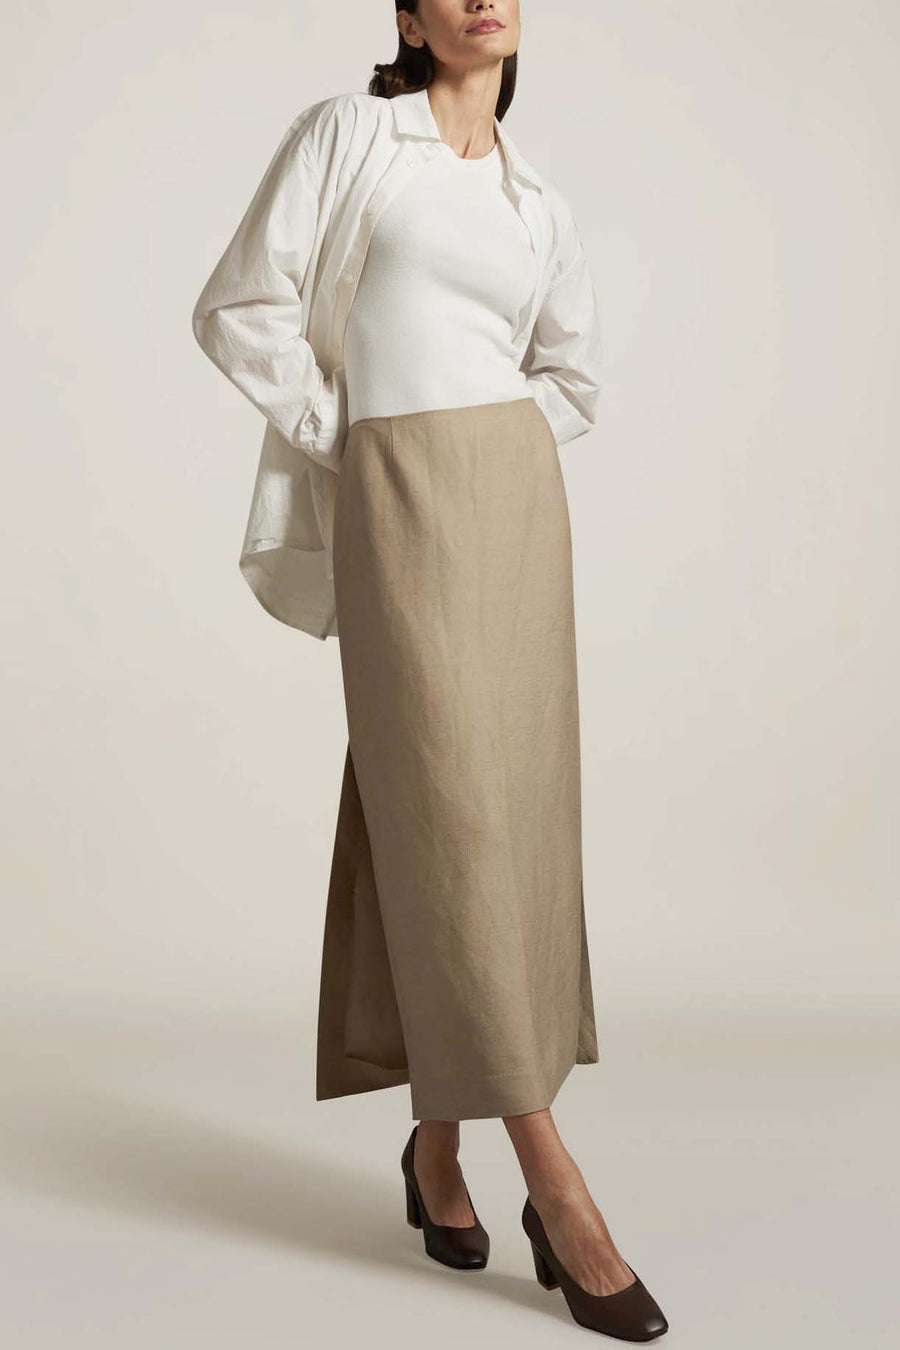 Forsyth Pencil Skirt in Khaki Deadstock Linen